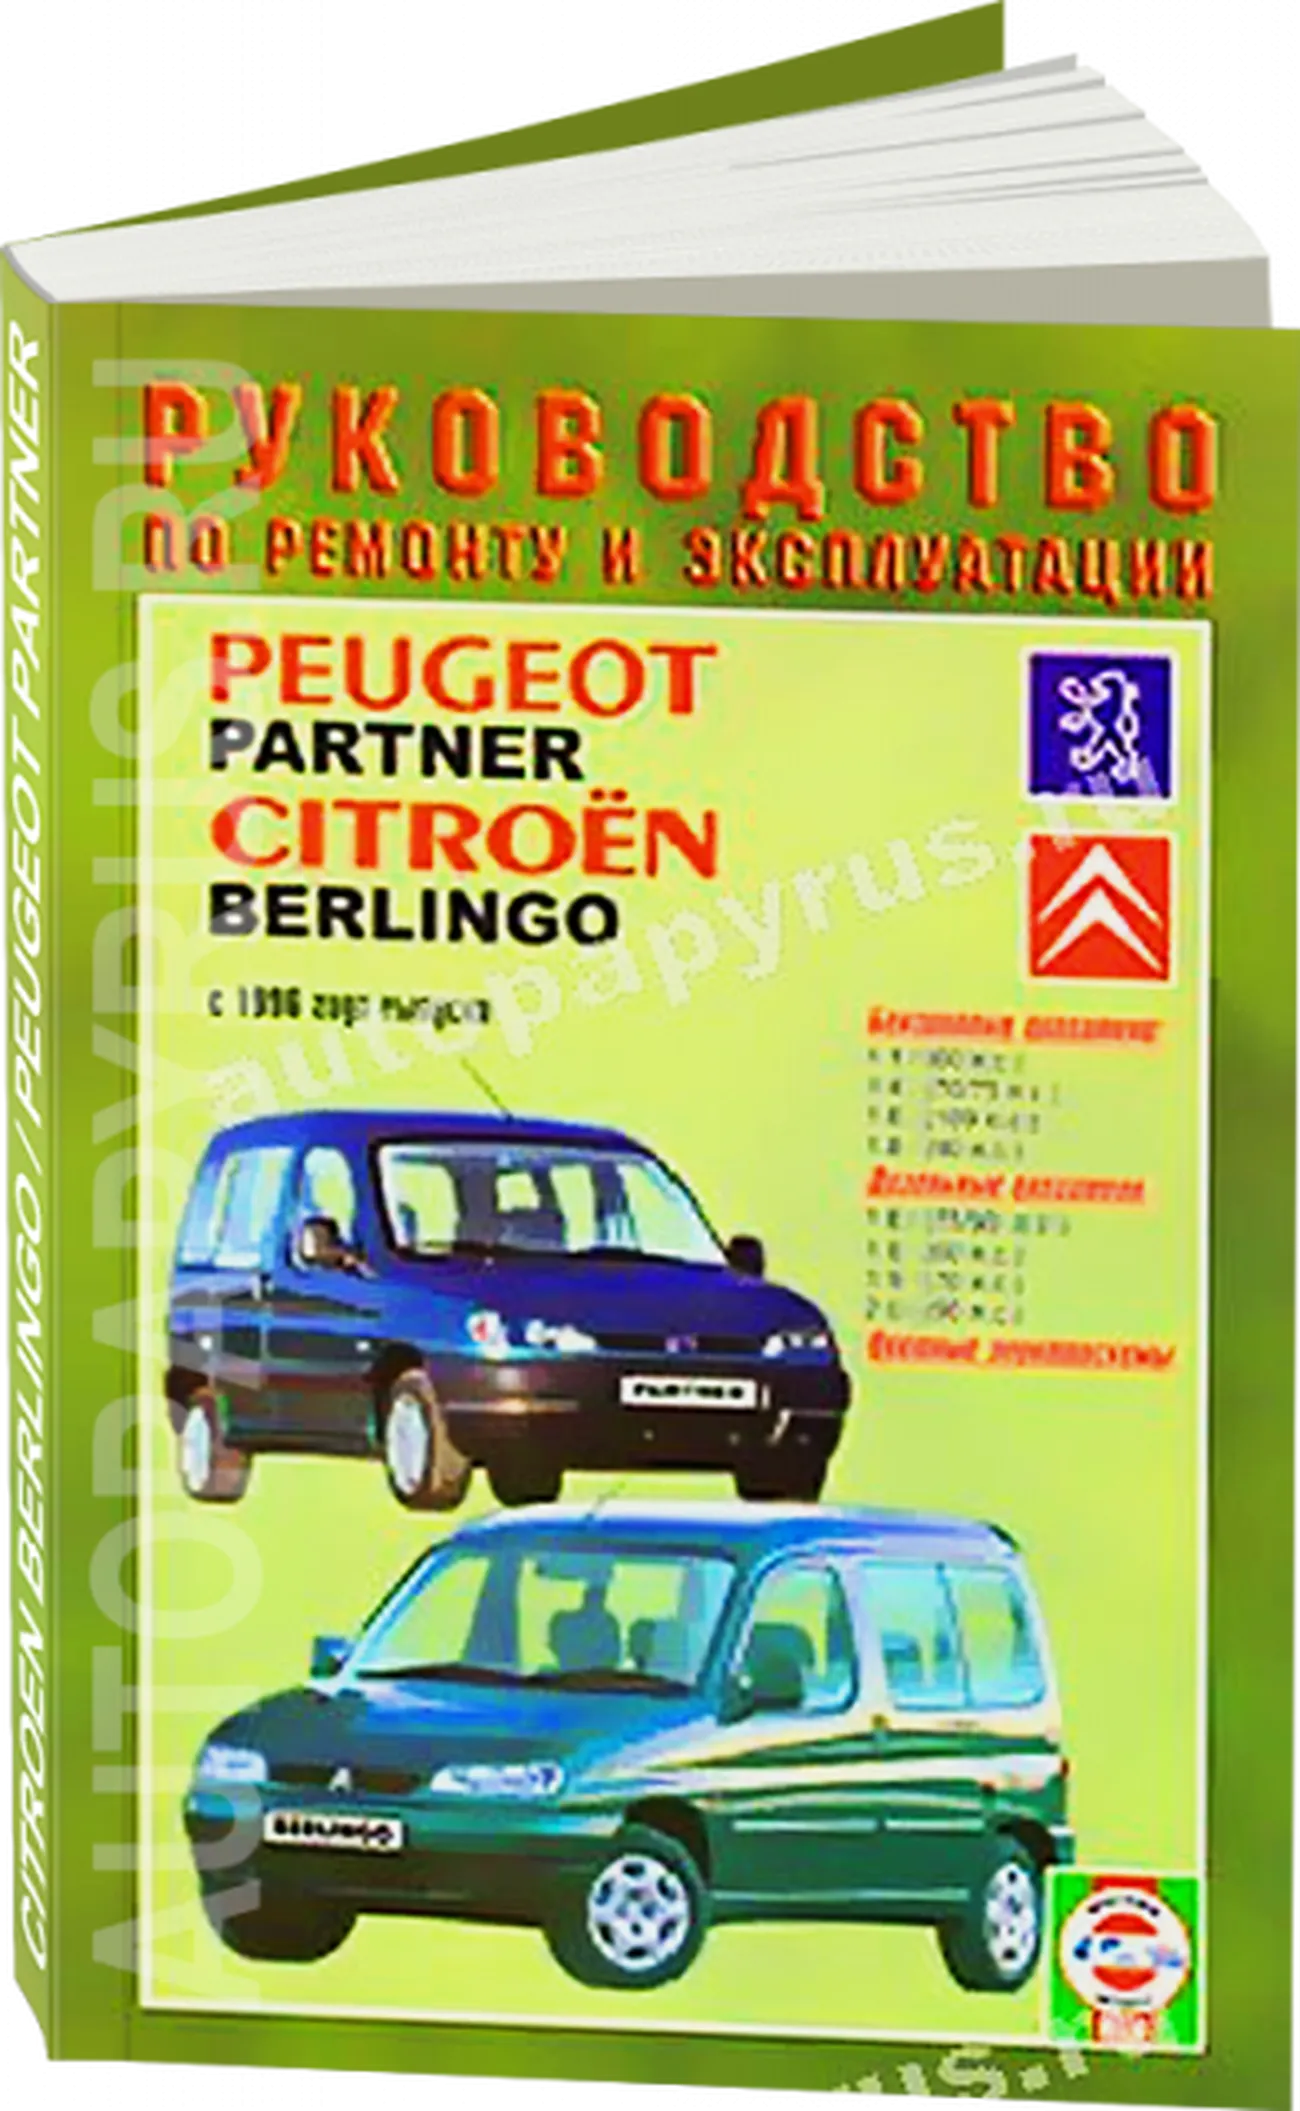 Книга: PEUGEOT PARTNER / CITROEN BERLINGO (б , д) с 1996 г.в., рем., экспл., то | Чижовка